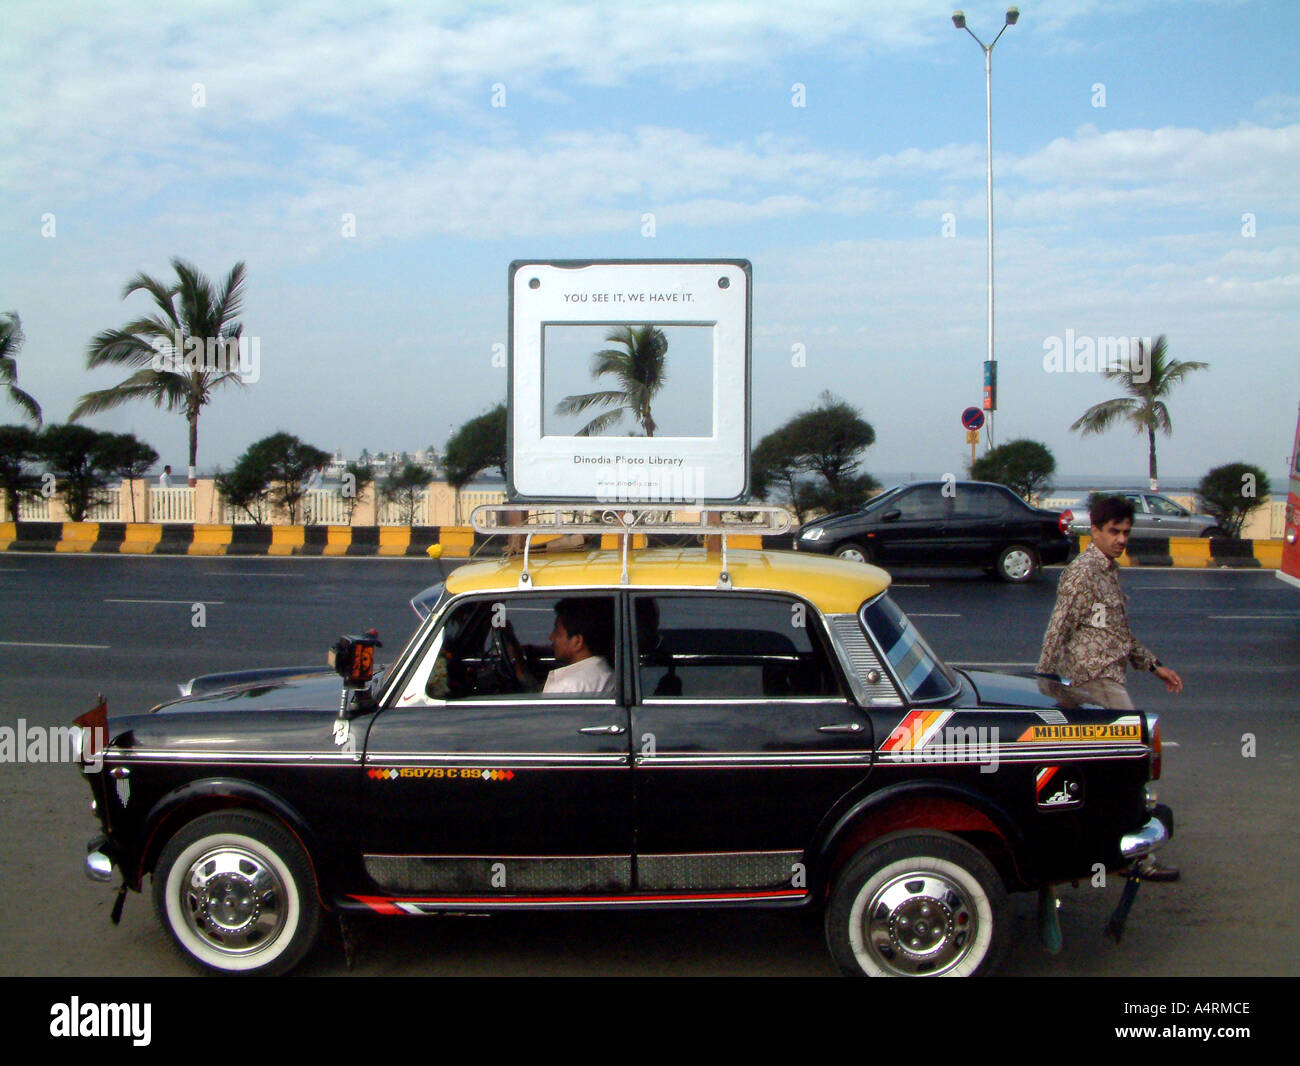 Modello di trasparenza per diapositive da 35 mm su carrier di taxi come promozione per la Biblioteca fotografica Dinodia a Bombay Mumbai Maharashtra India Asia Foto Stock